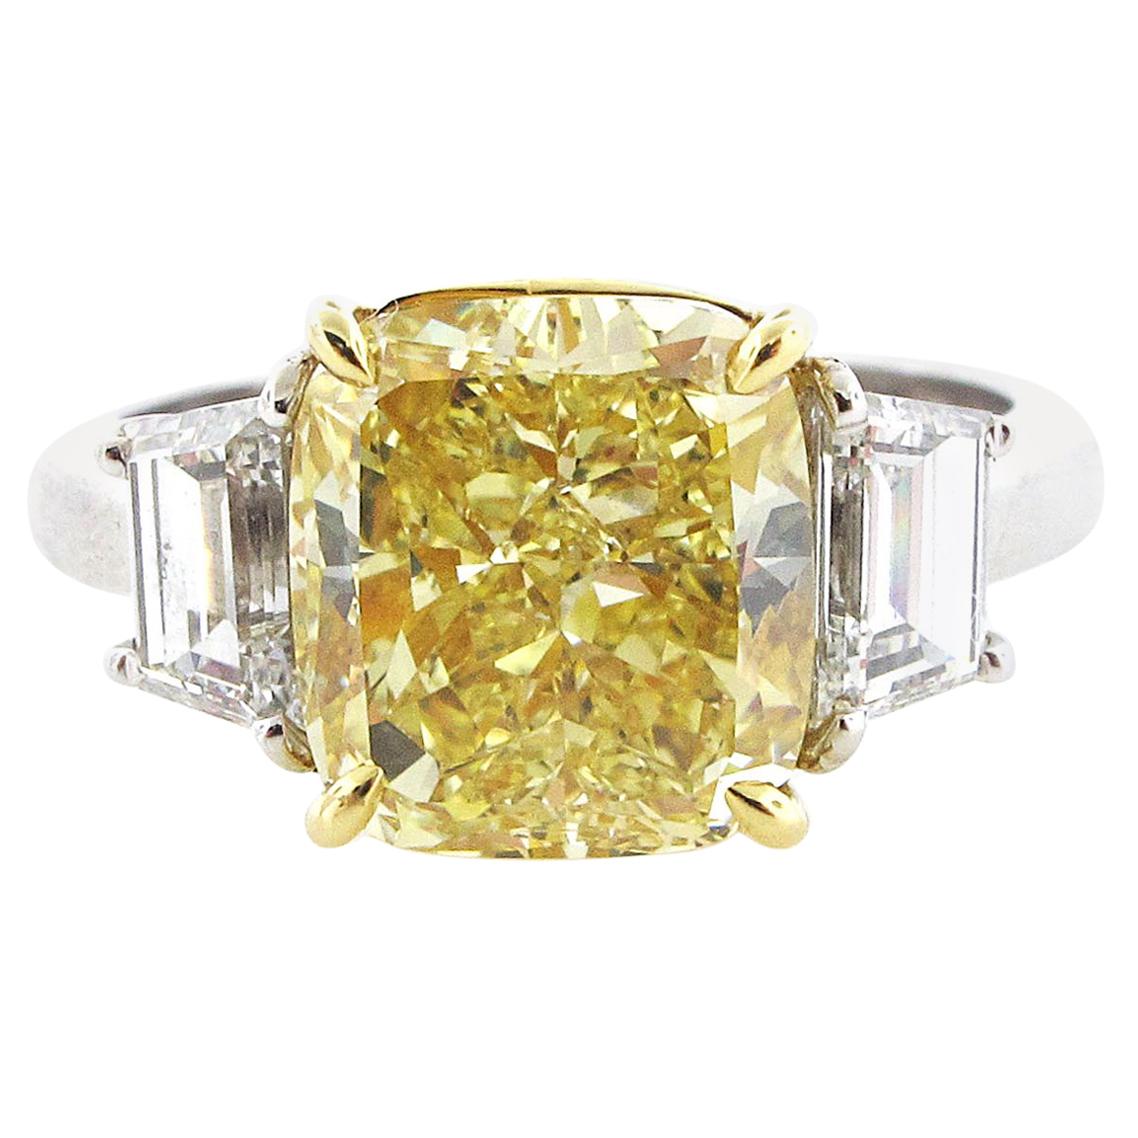 GIA Certified 4.02 Carat Fancy Yellow Cushion Cut Diamond Engagement Ring